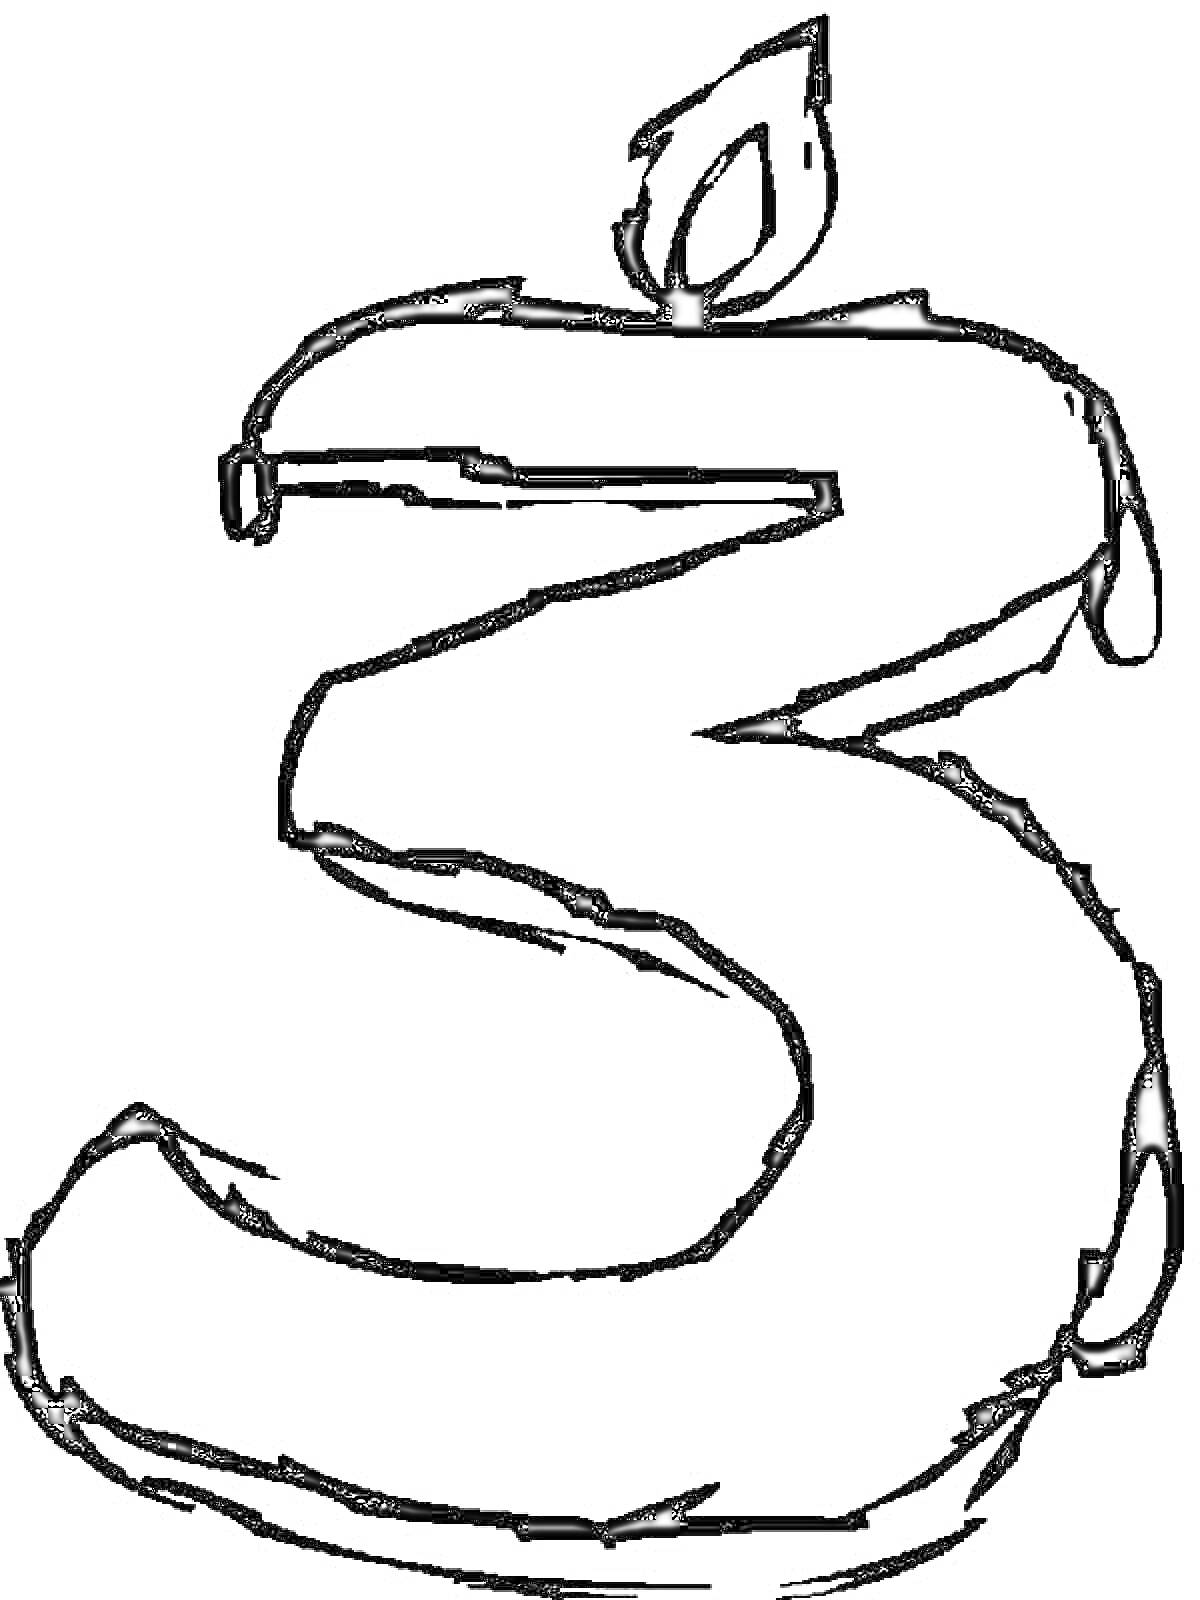 Раскраска Цифра 3 с изображением пламени над ней.